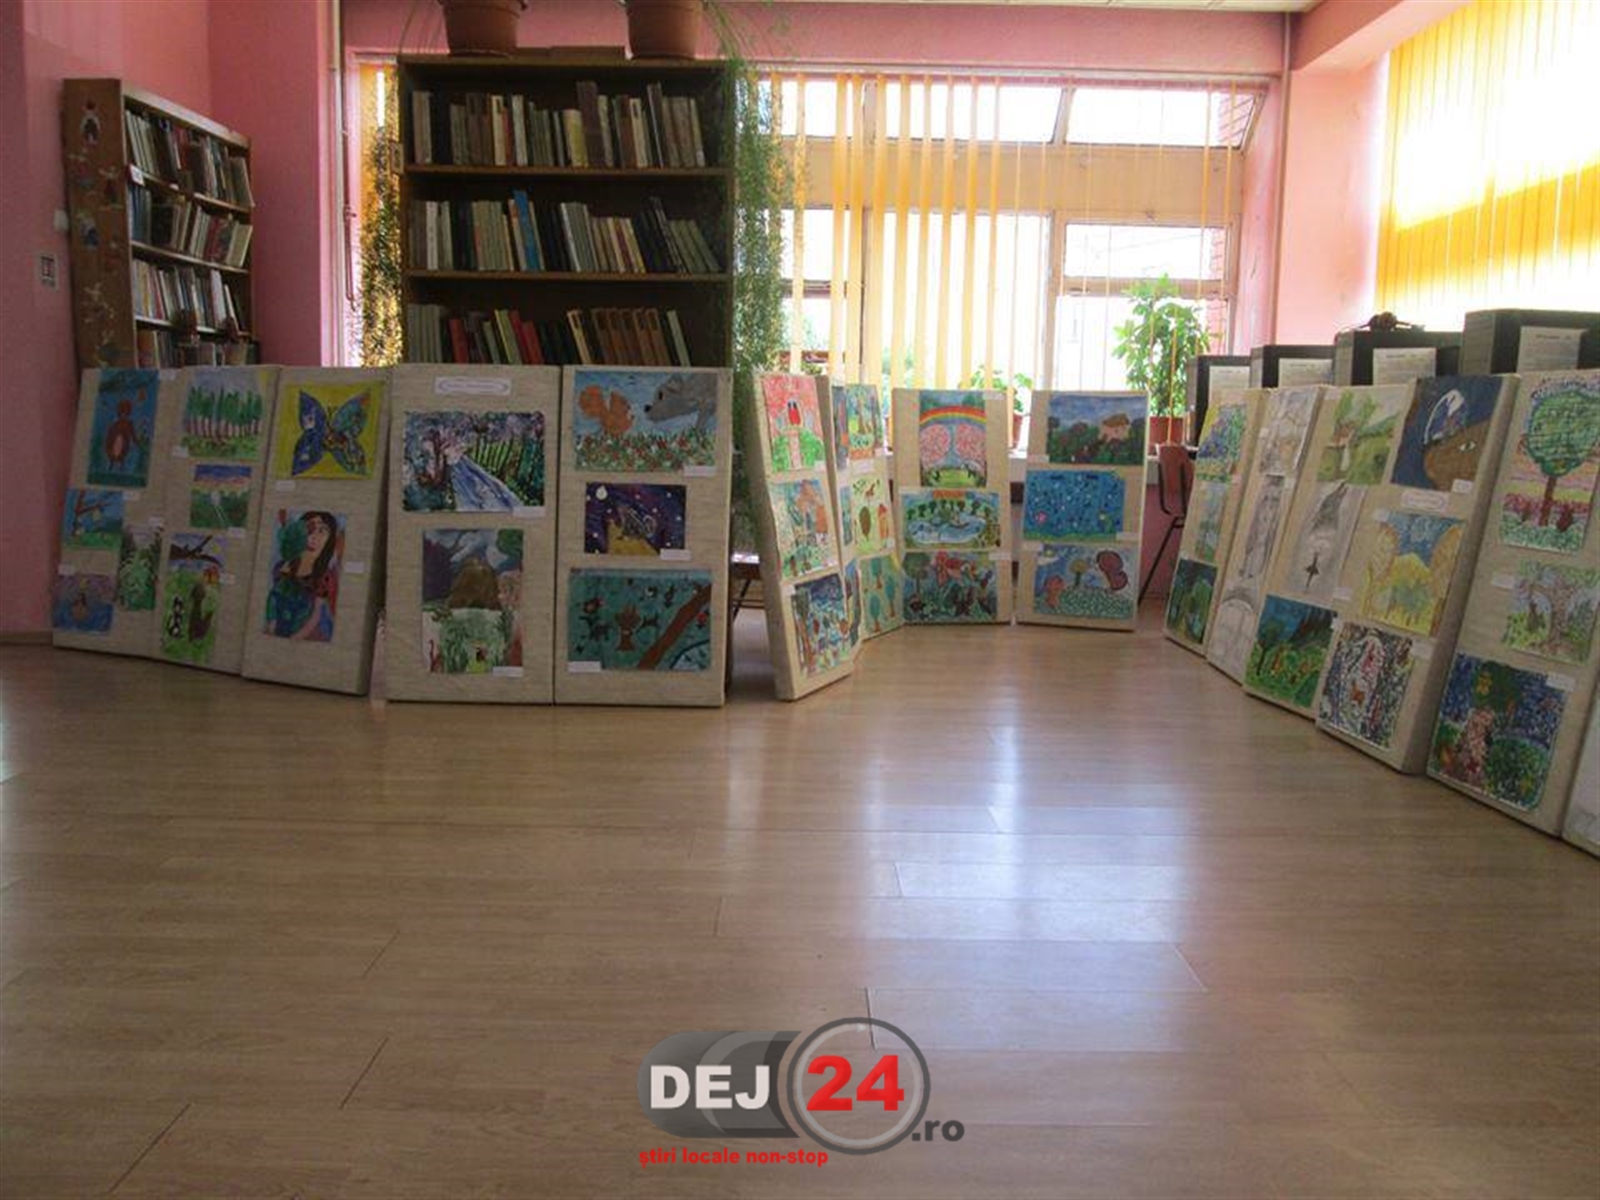 Salonul anual de desene Biblioteca Municipala Dej (2)